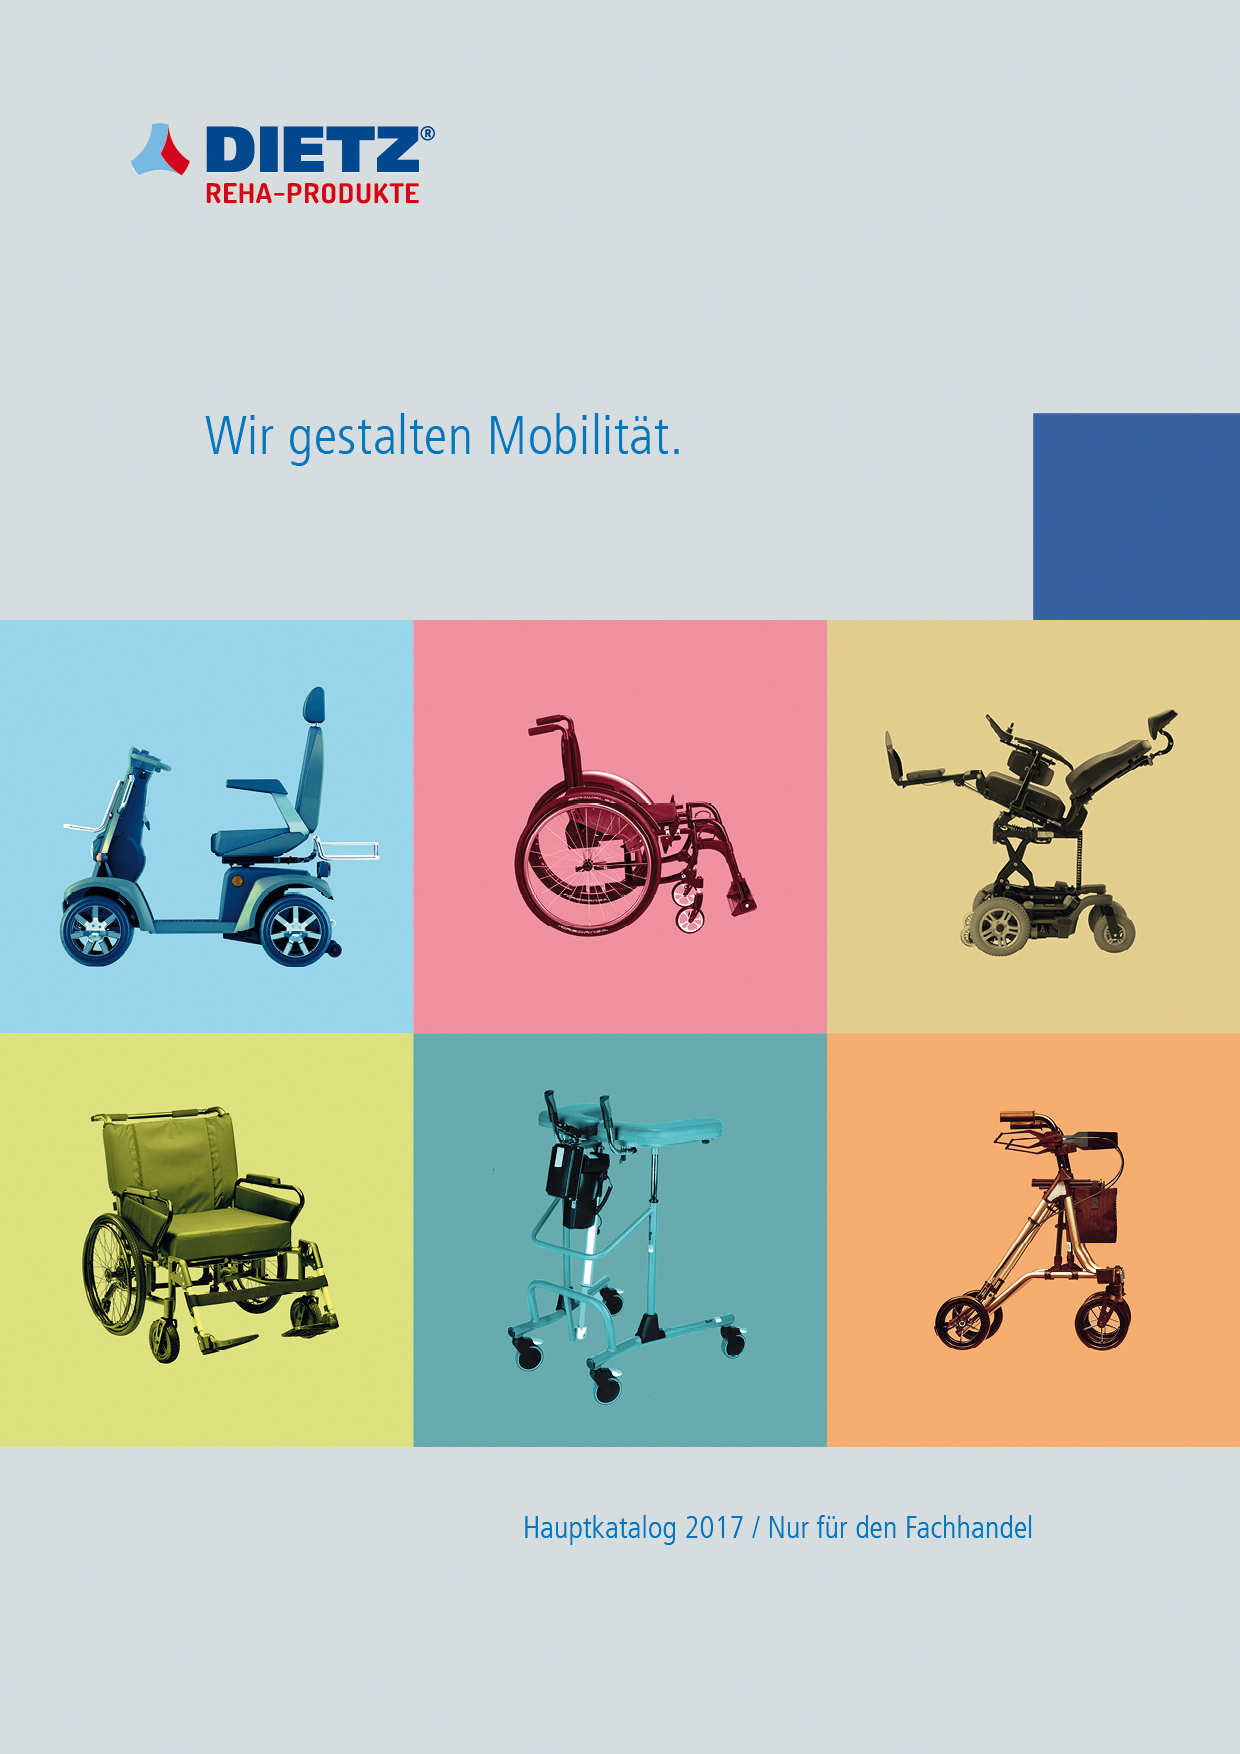 DIETZ_Katalog_2017_Titel Qualitative Alltagshilfen für mehr Mobilität